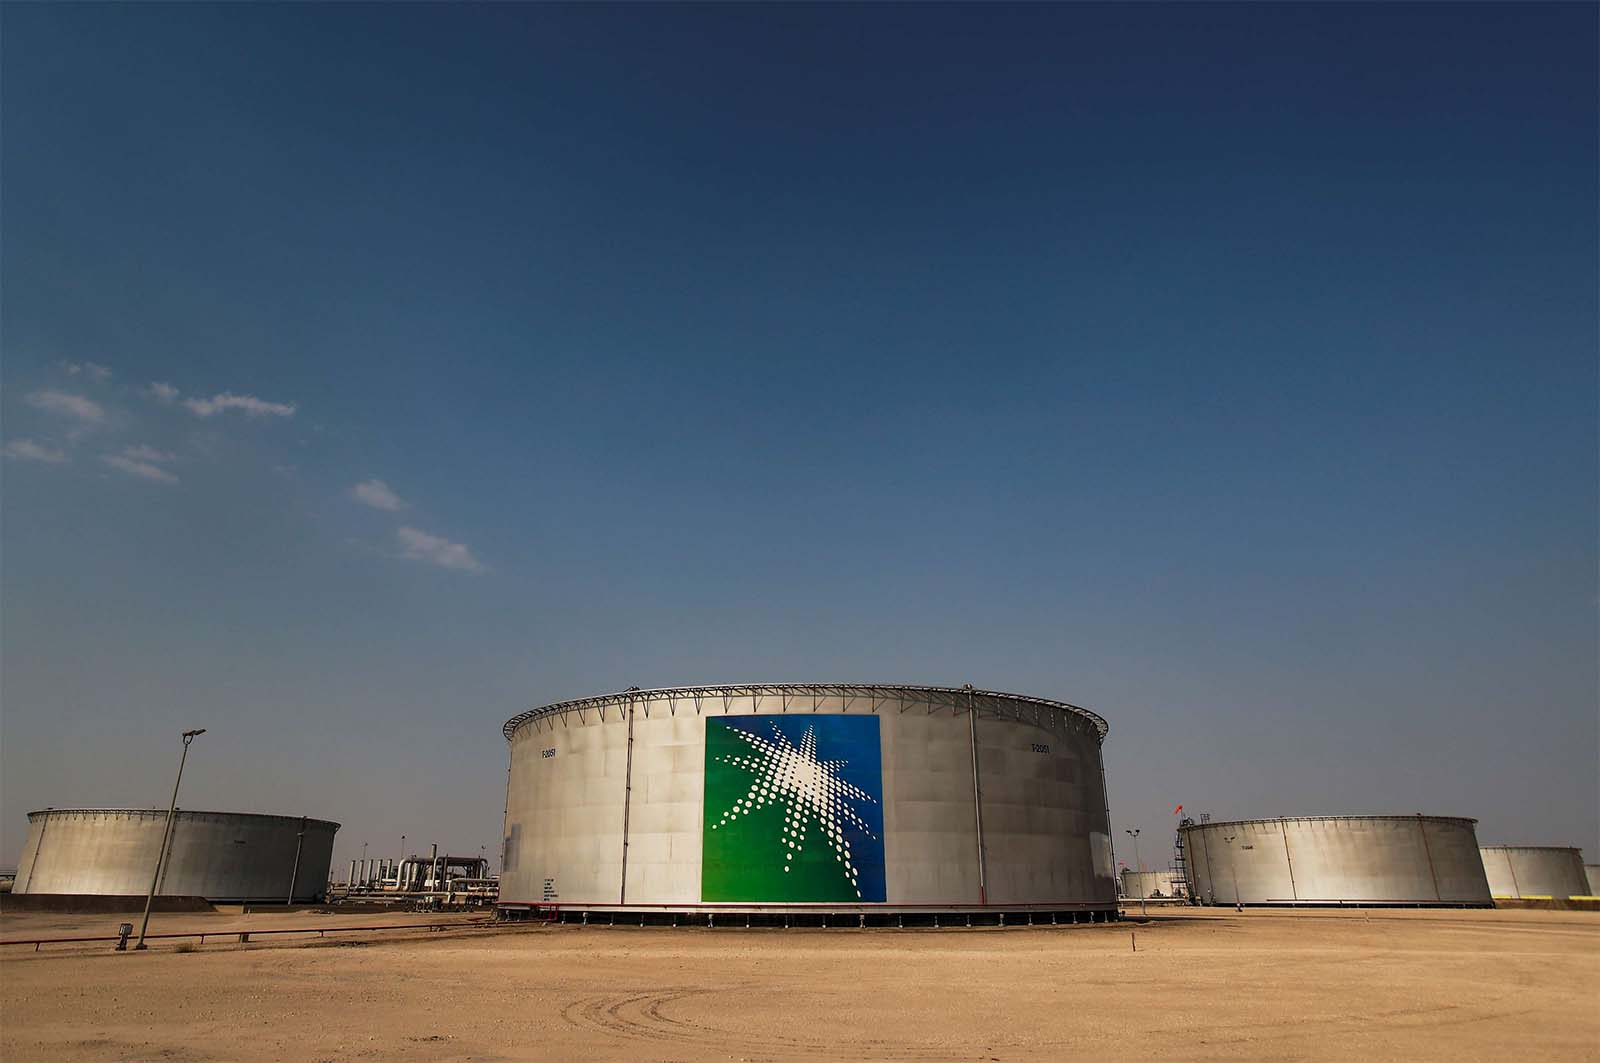 Branded oil tanks at Saudi Aramco oil facility in Abqaiq, Saudi Arabia